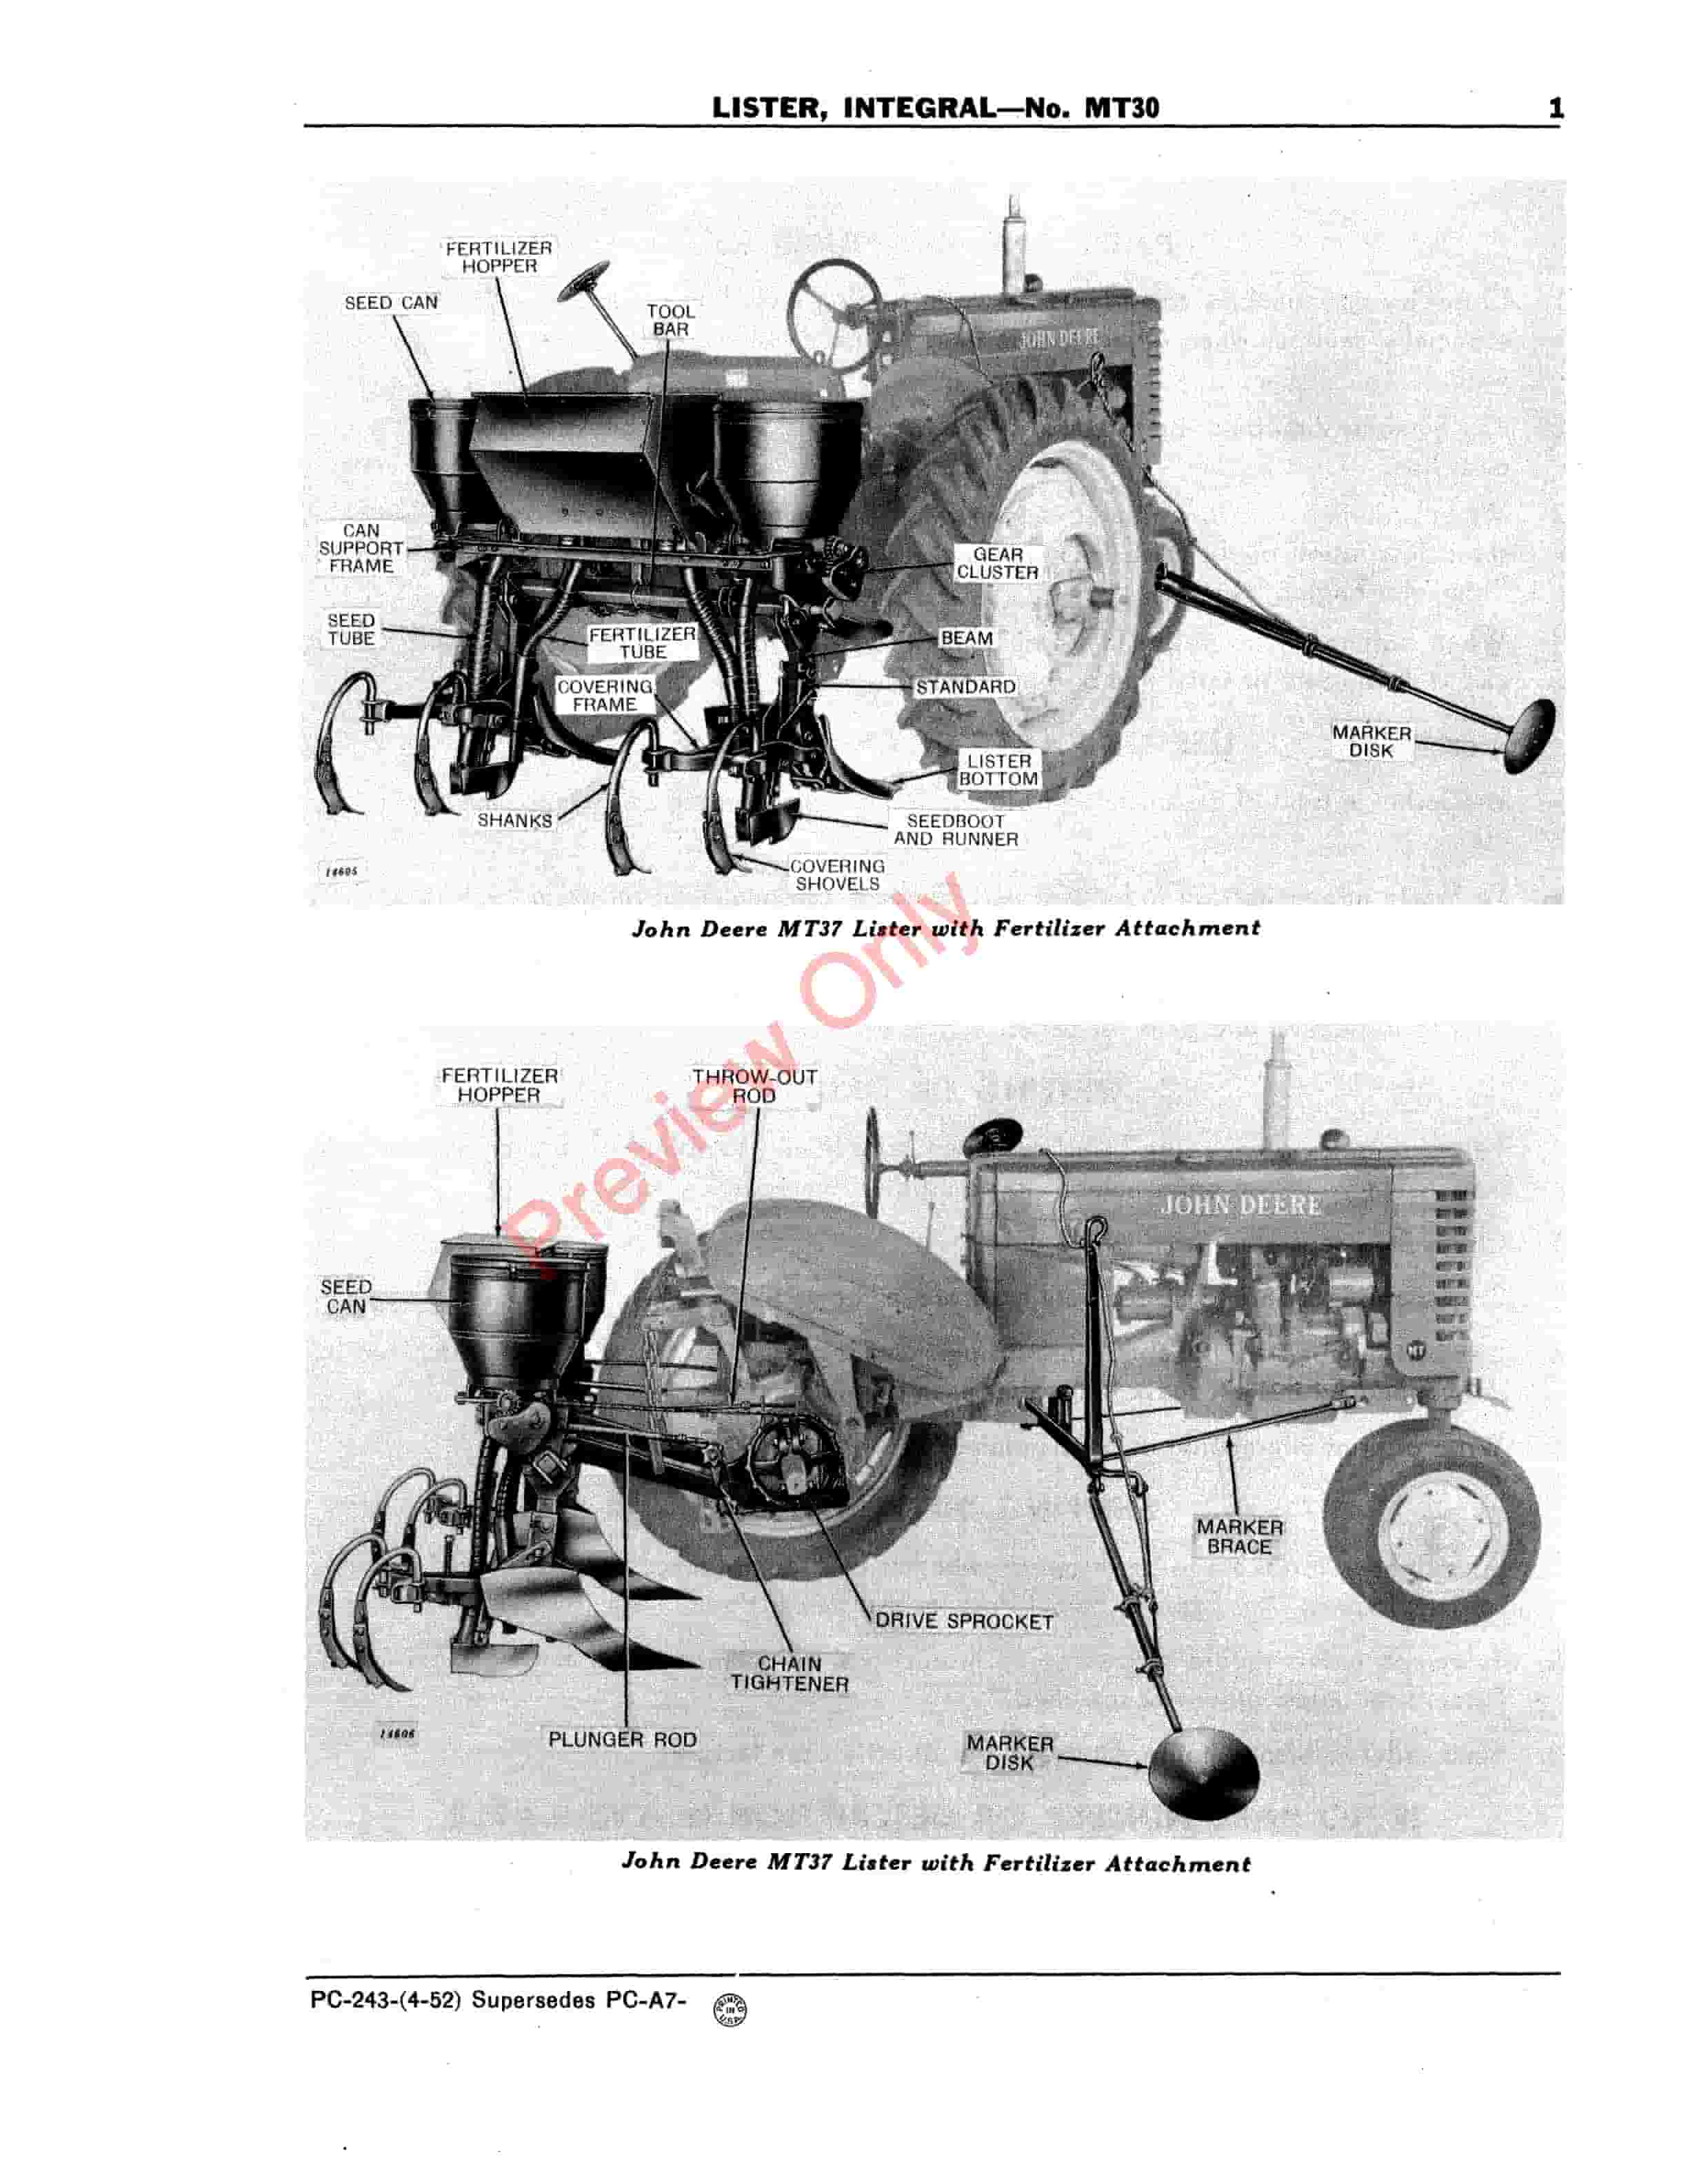 John Deere Integral Lister – No. MT30 Parts Catalog PC243 01APR52-5